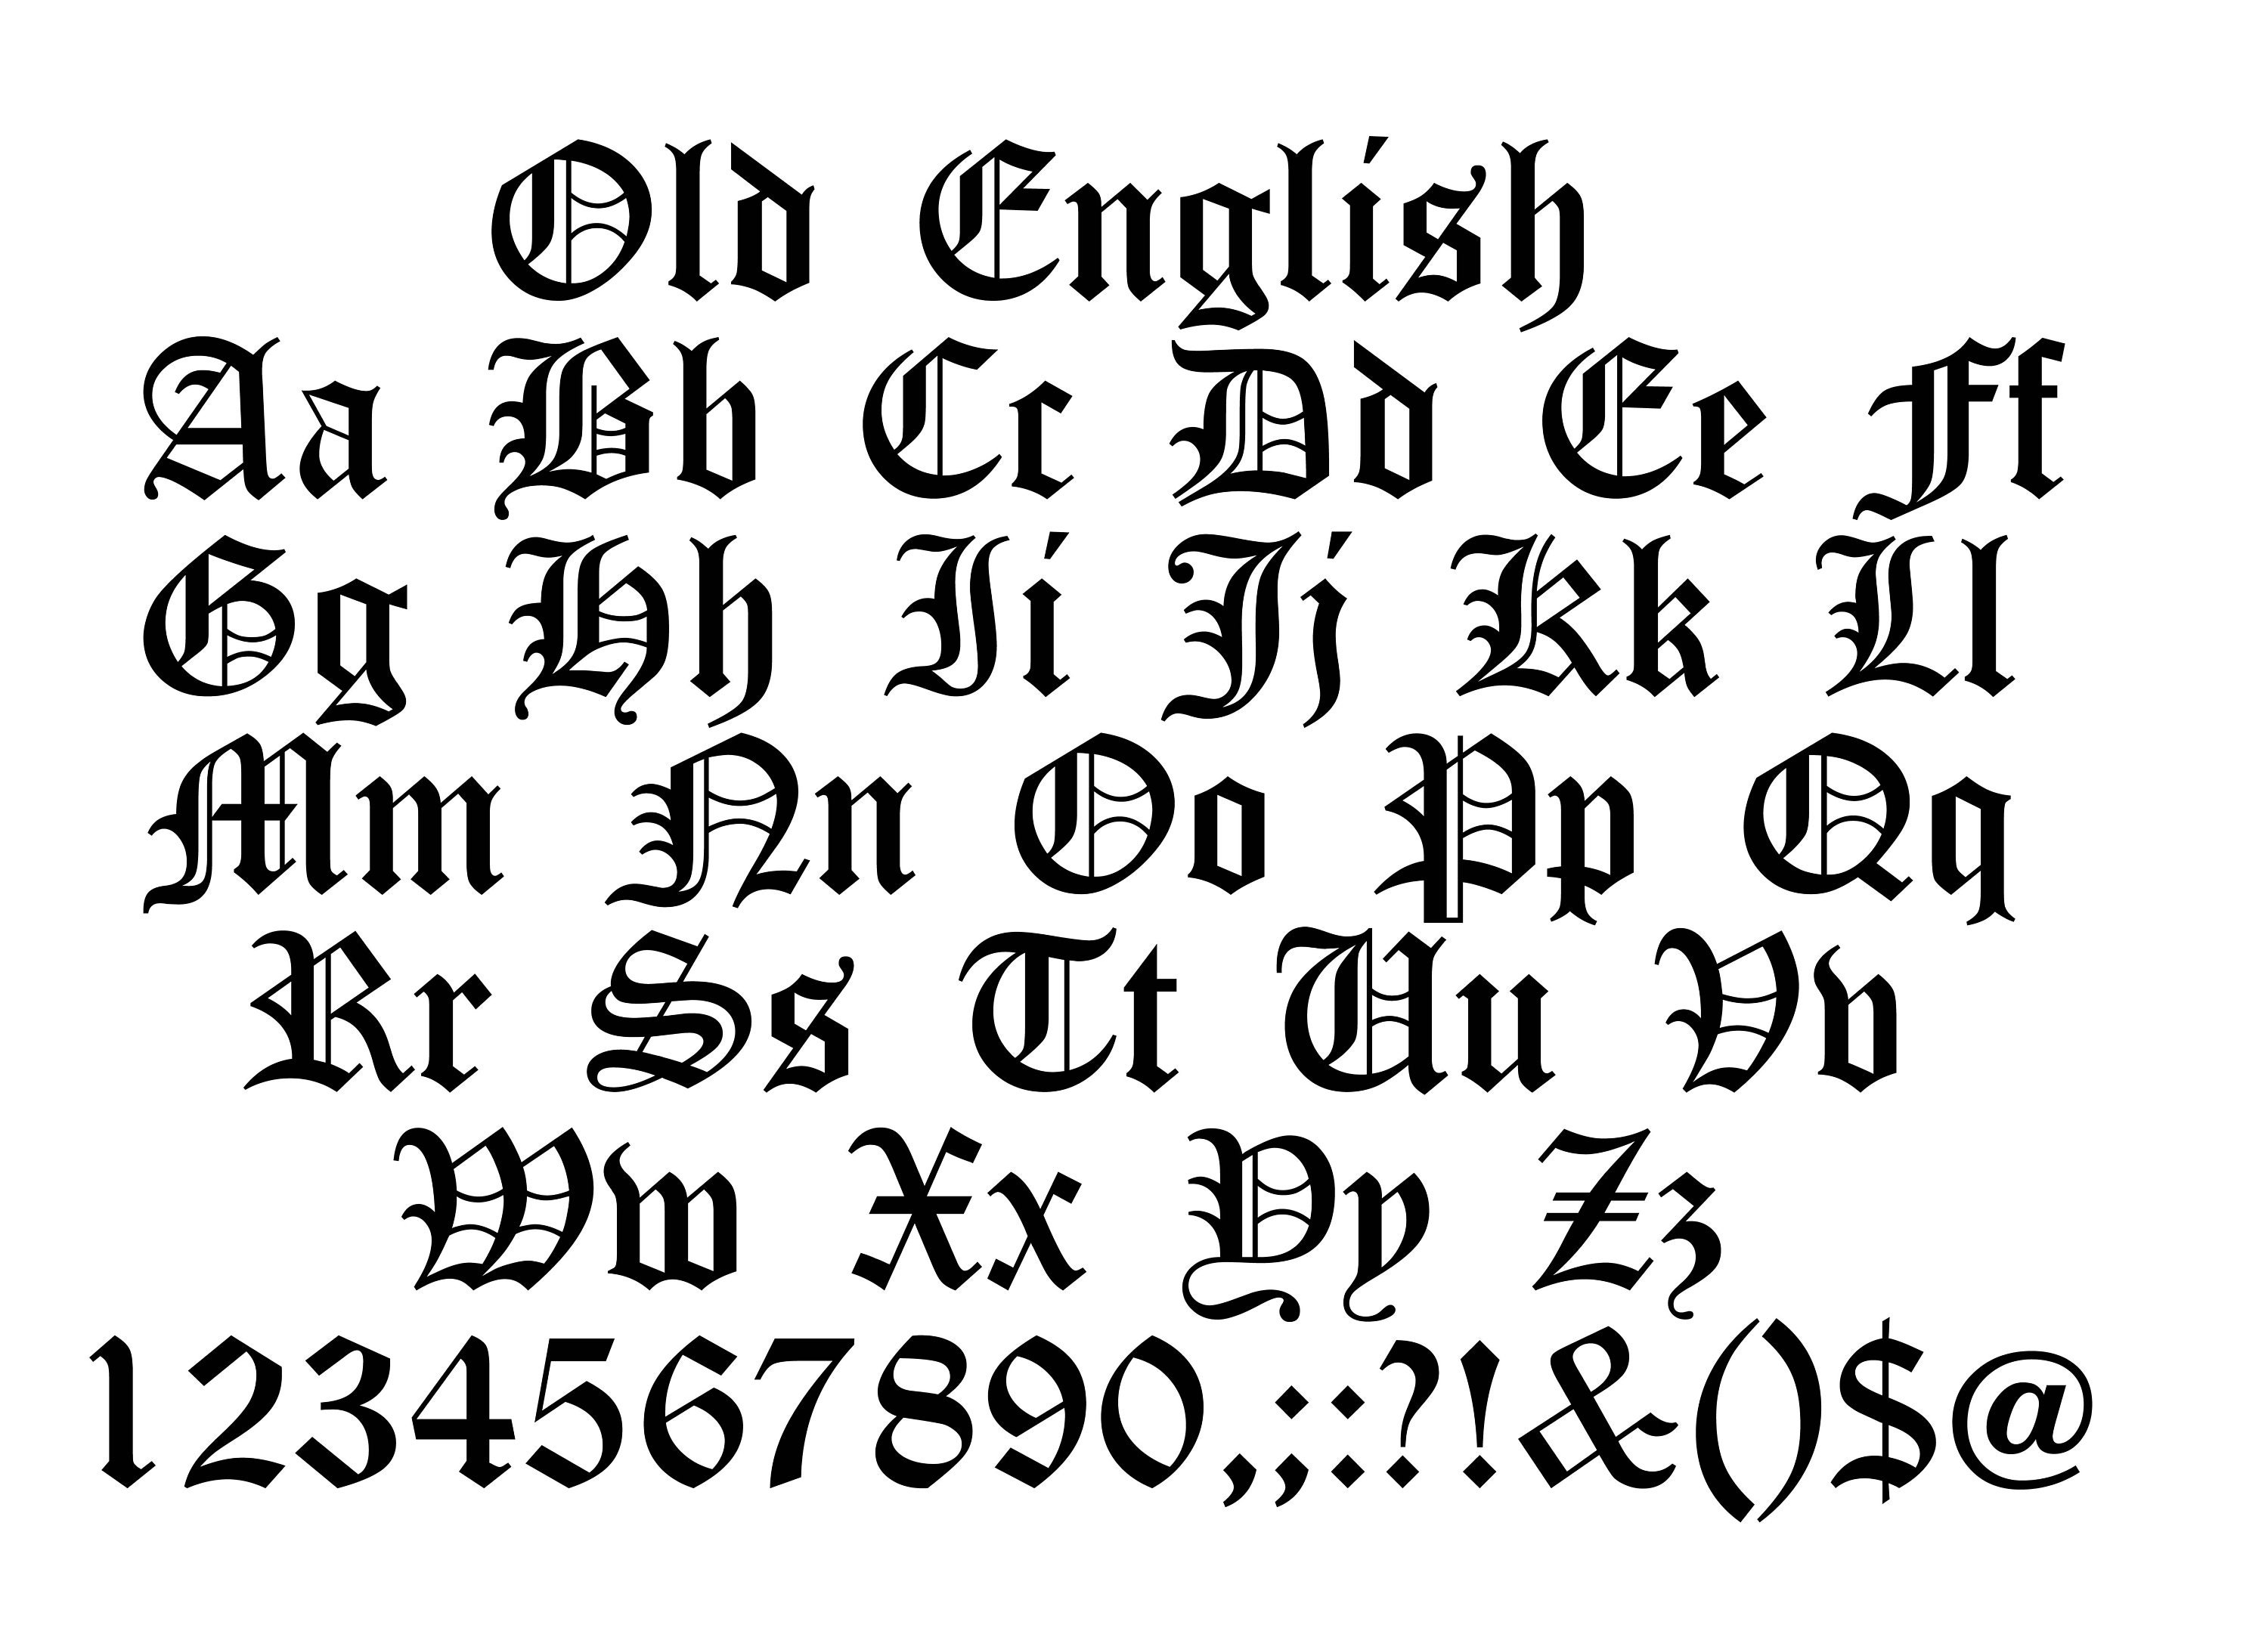 English Font Old English Font Svg Old English Script Svg - Etsy ...